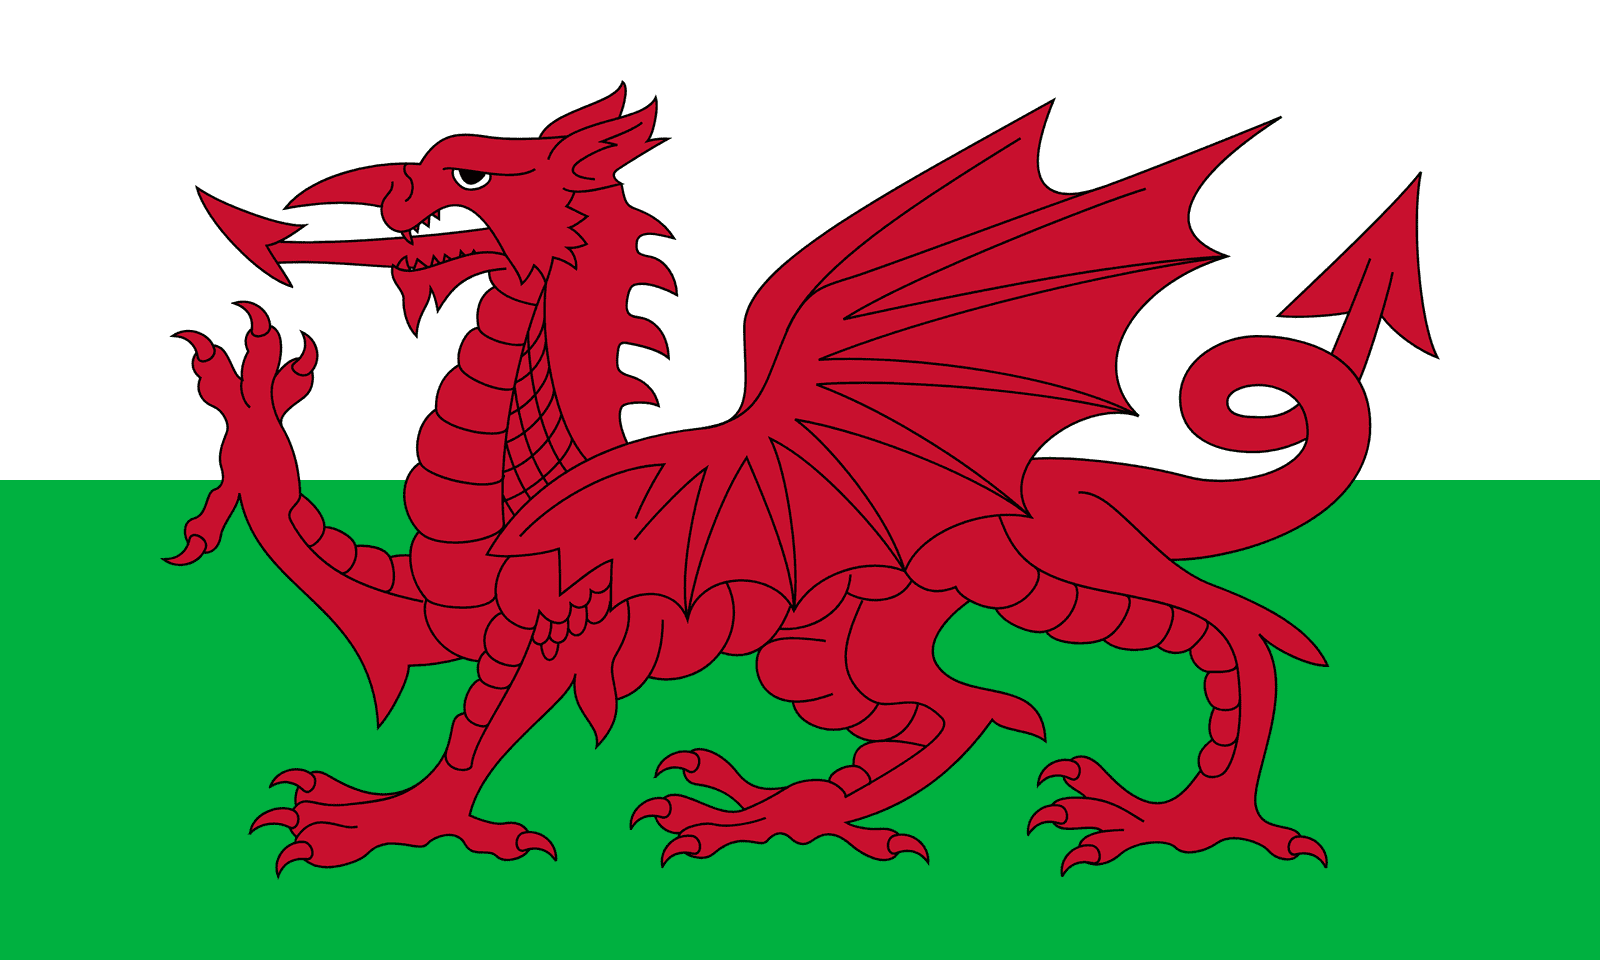 Wales - Powered by Eduhyme.com